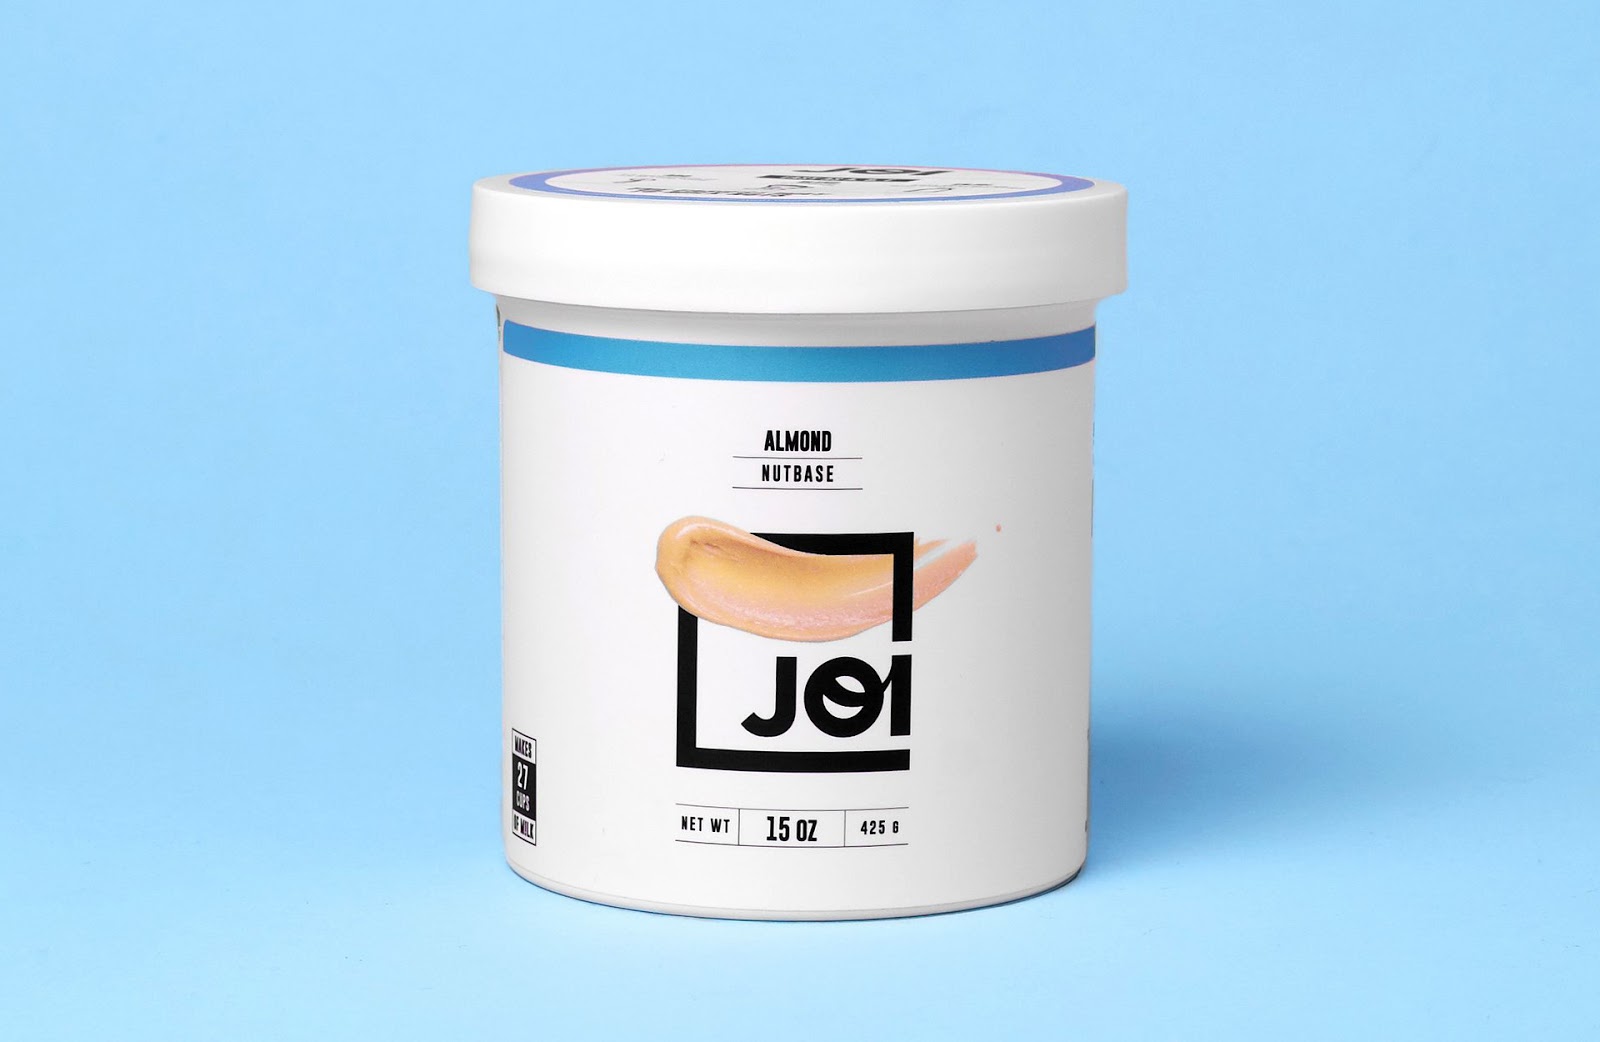 JOI坚果牛奶品牌包装设计